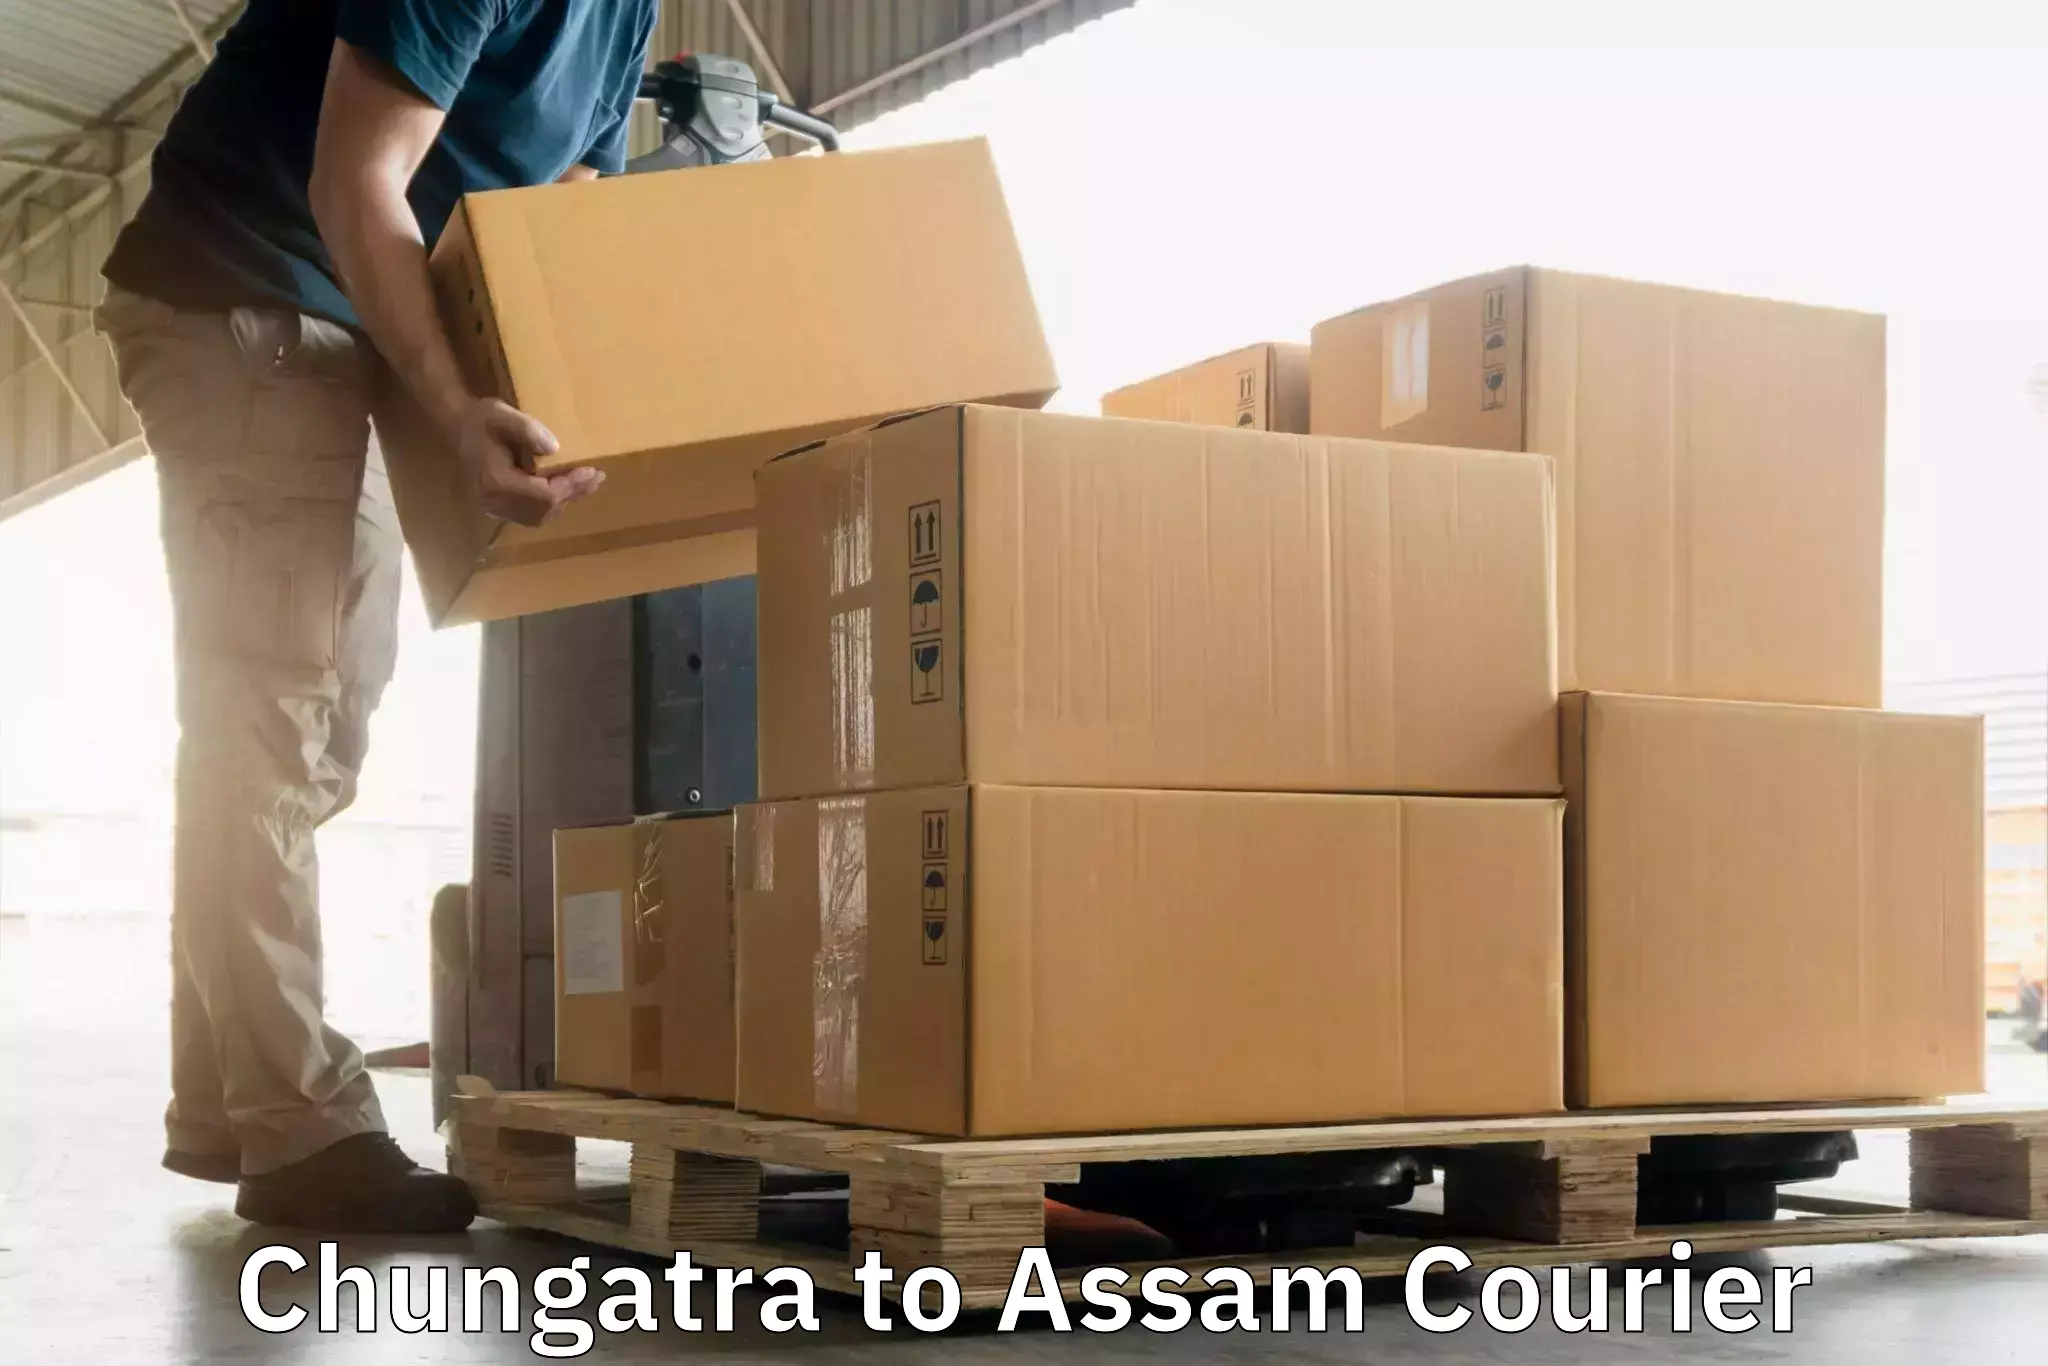 High-capacity parcel service Chungatra to Karbi Anglong